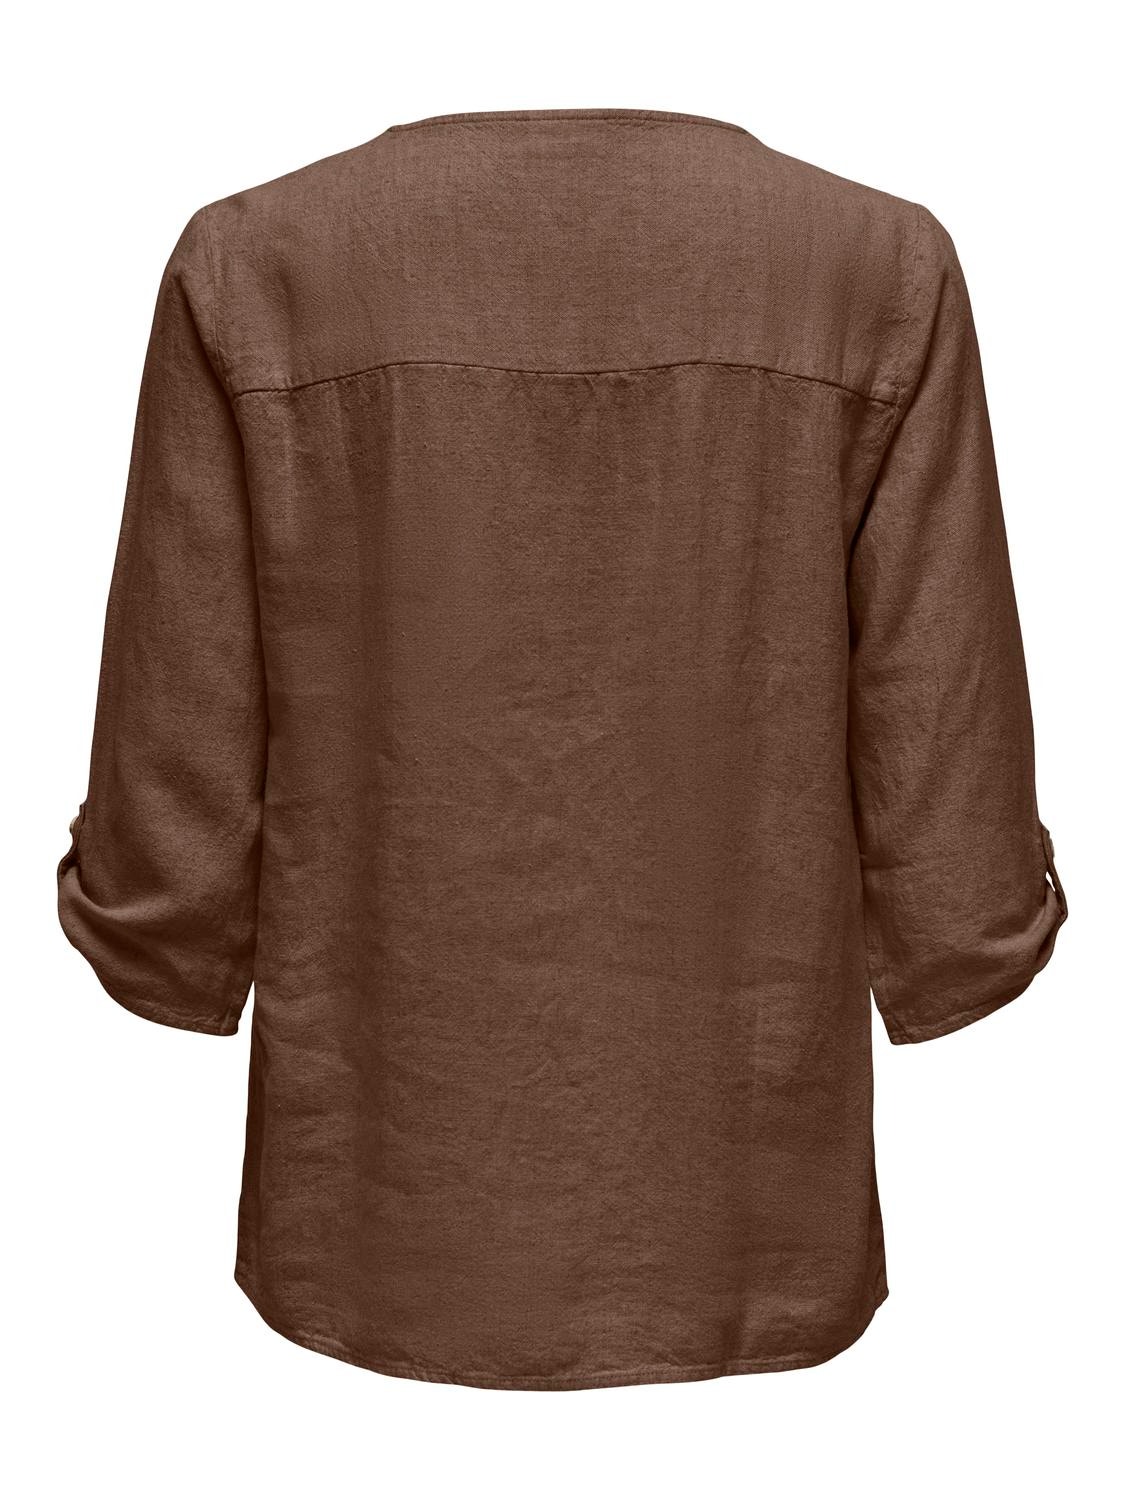 ONLY V-neck linen top -Carafe - 15317390